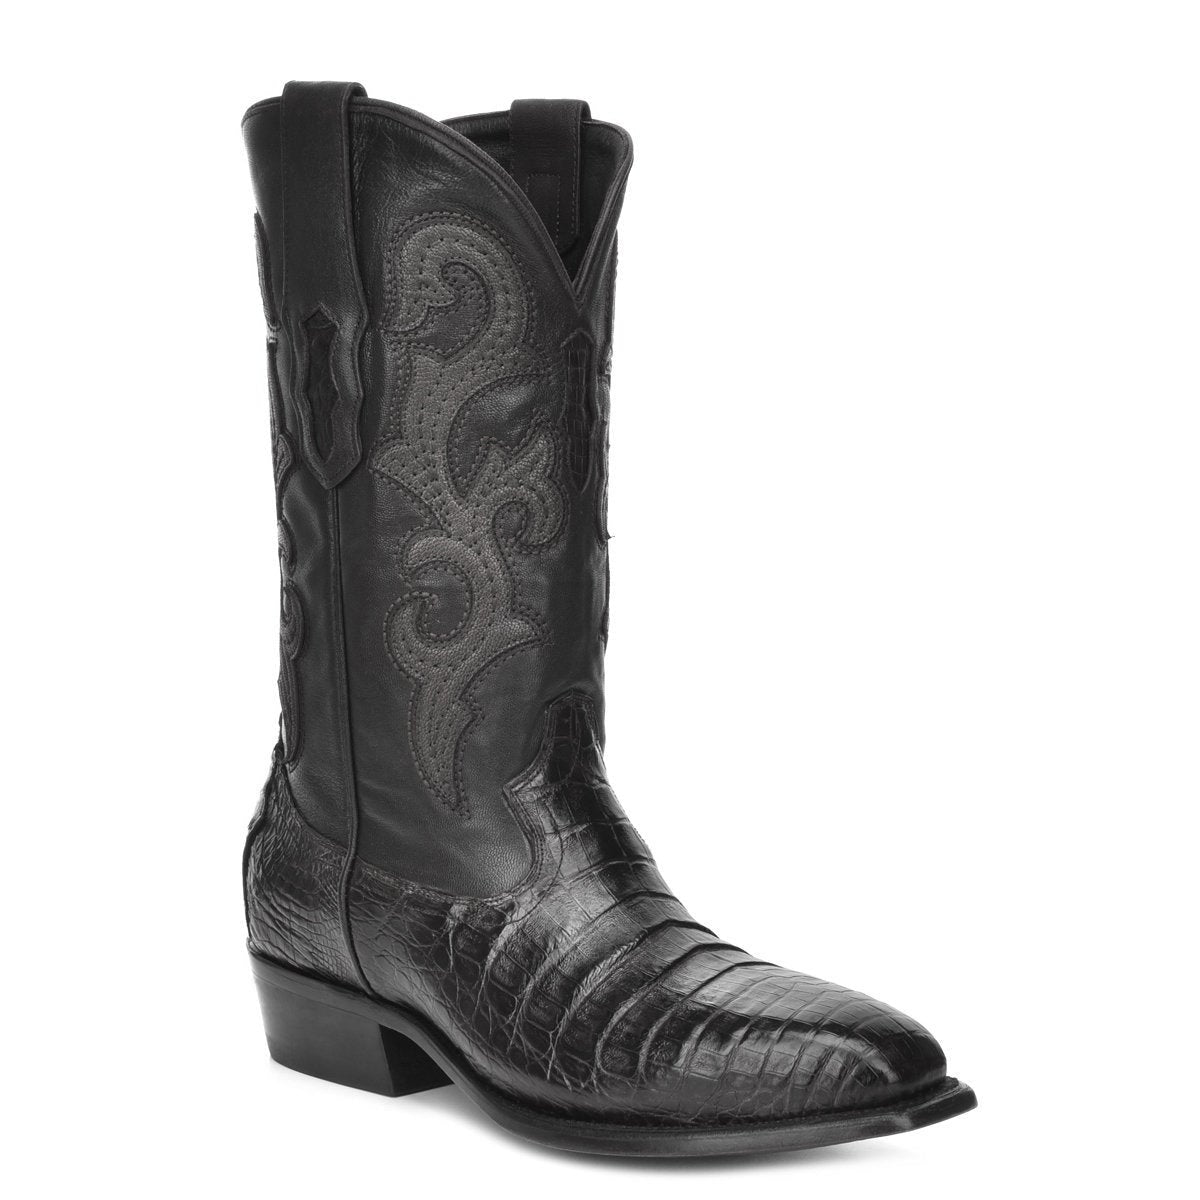 M2145 - Montana black dress cowboy caiman boots for men-Kuet